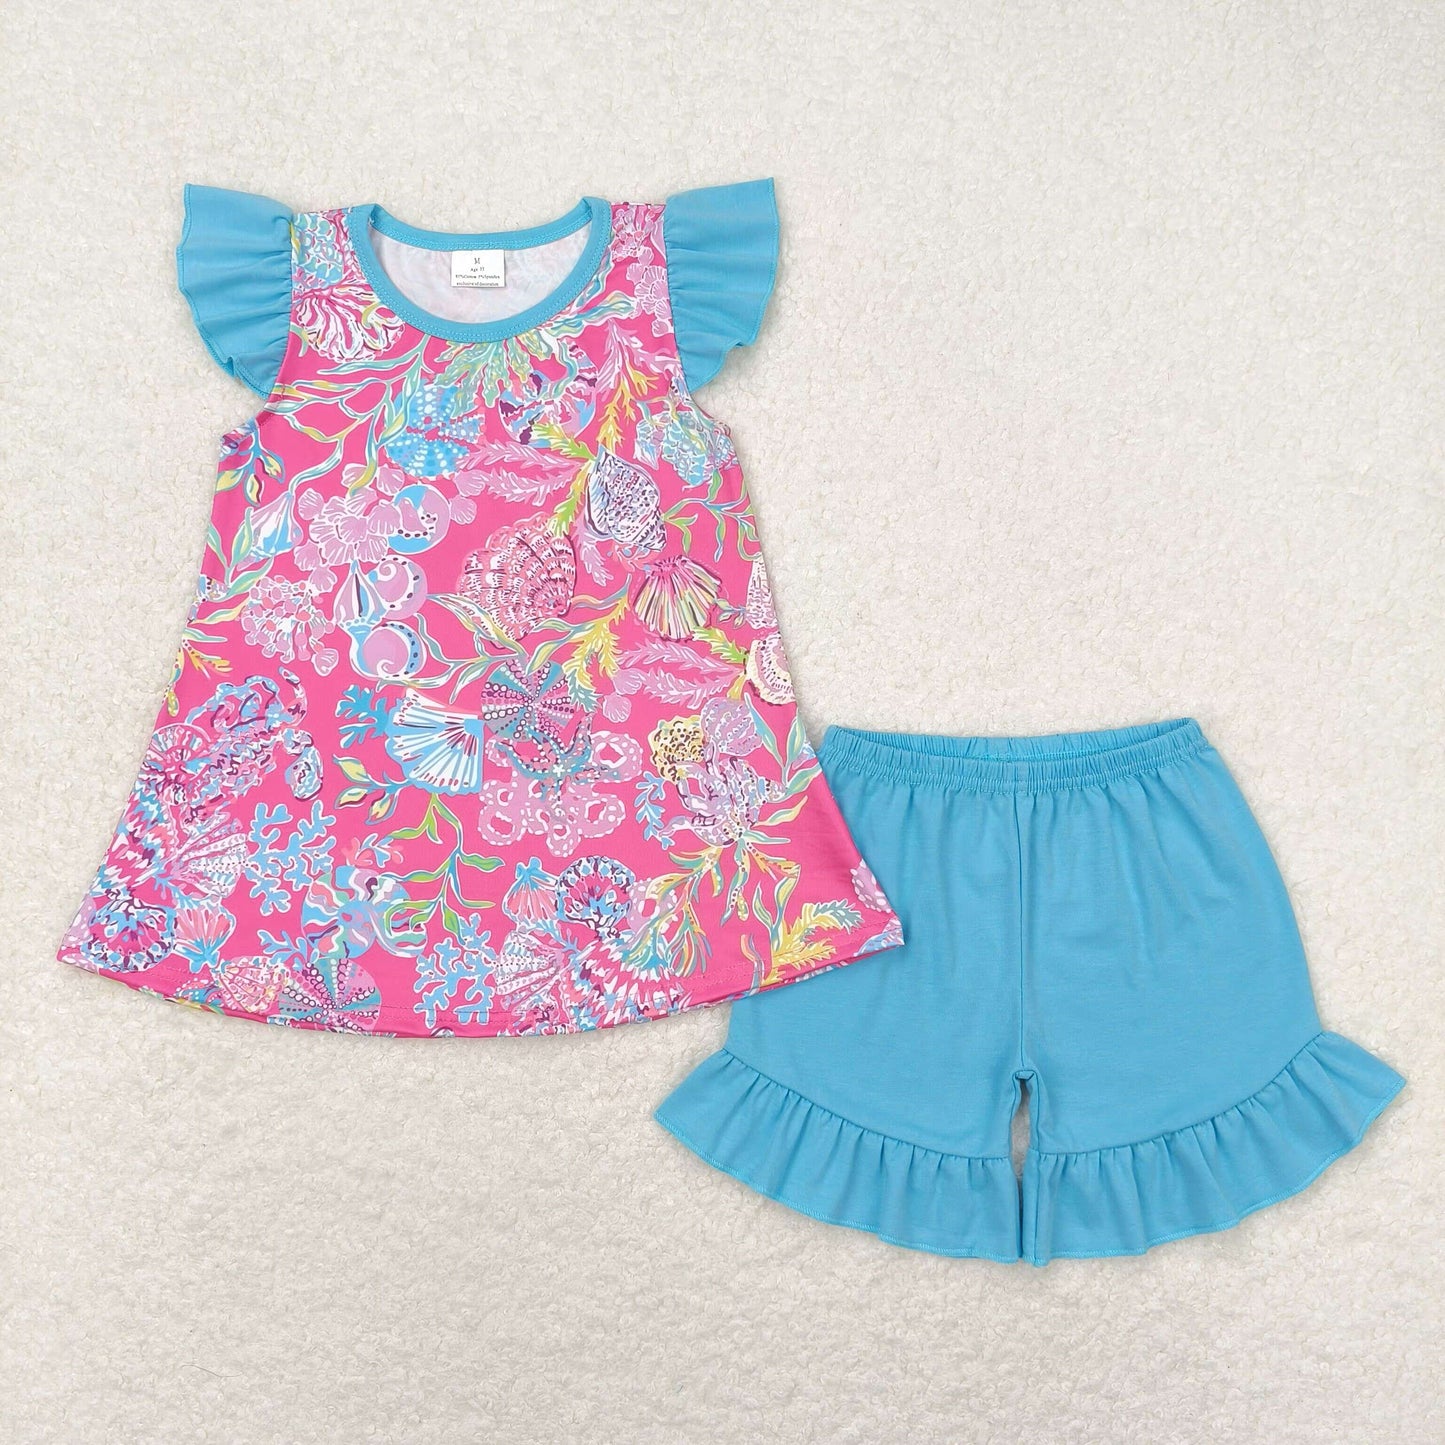 flutter sleeve ocean lily shell pink ruffle shorts set girls summer outfit